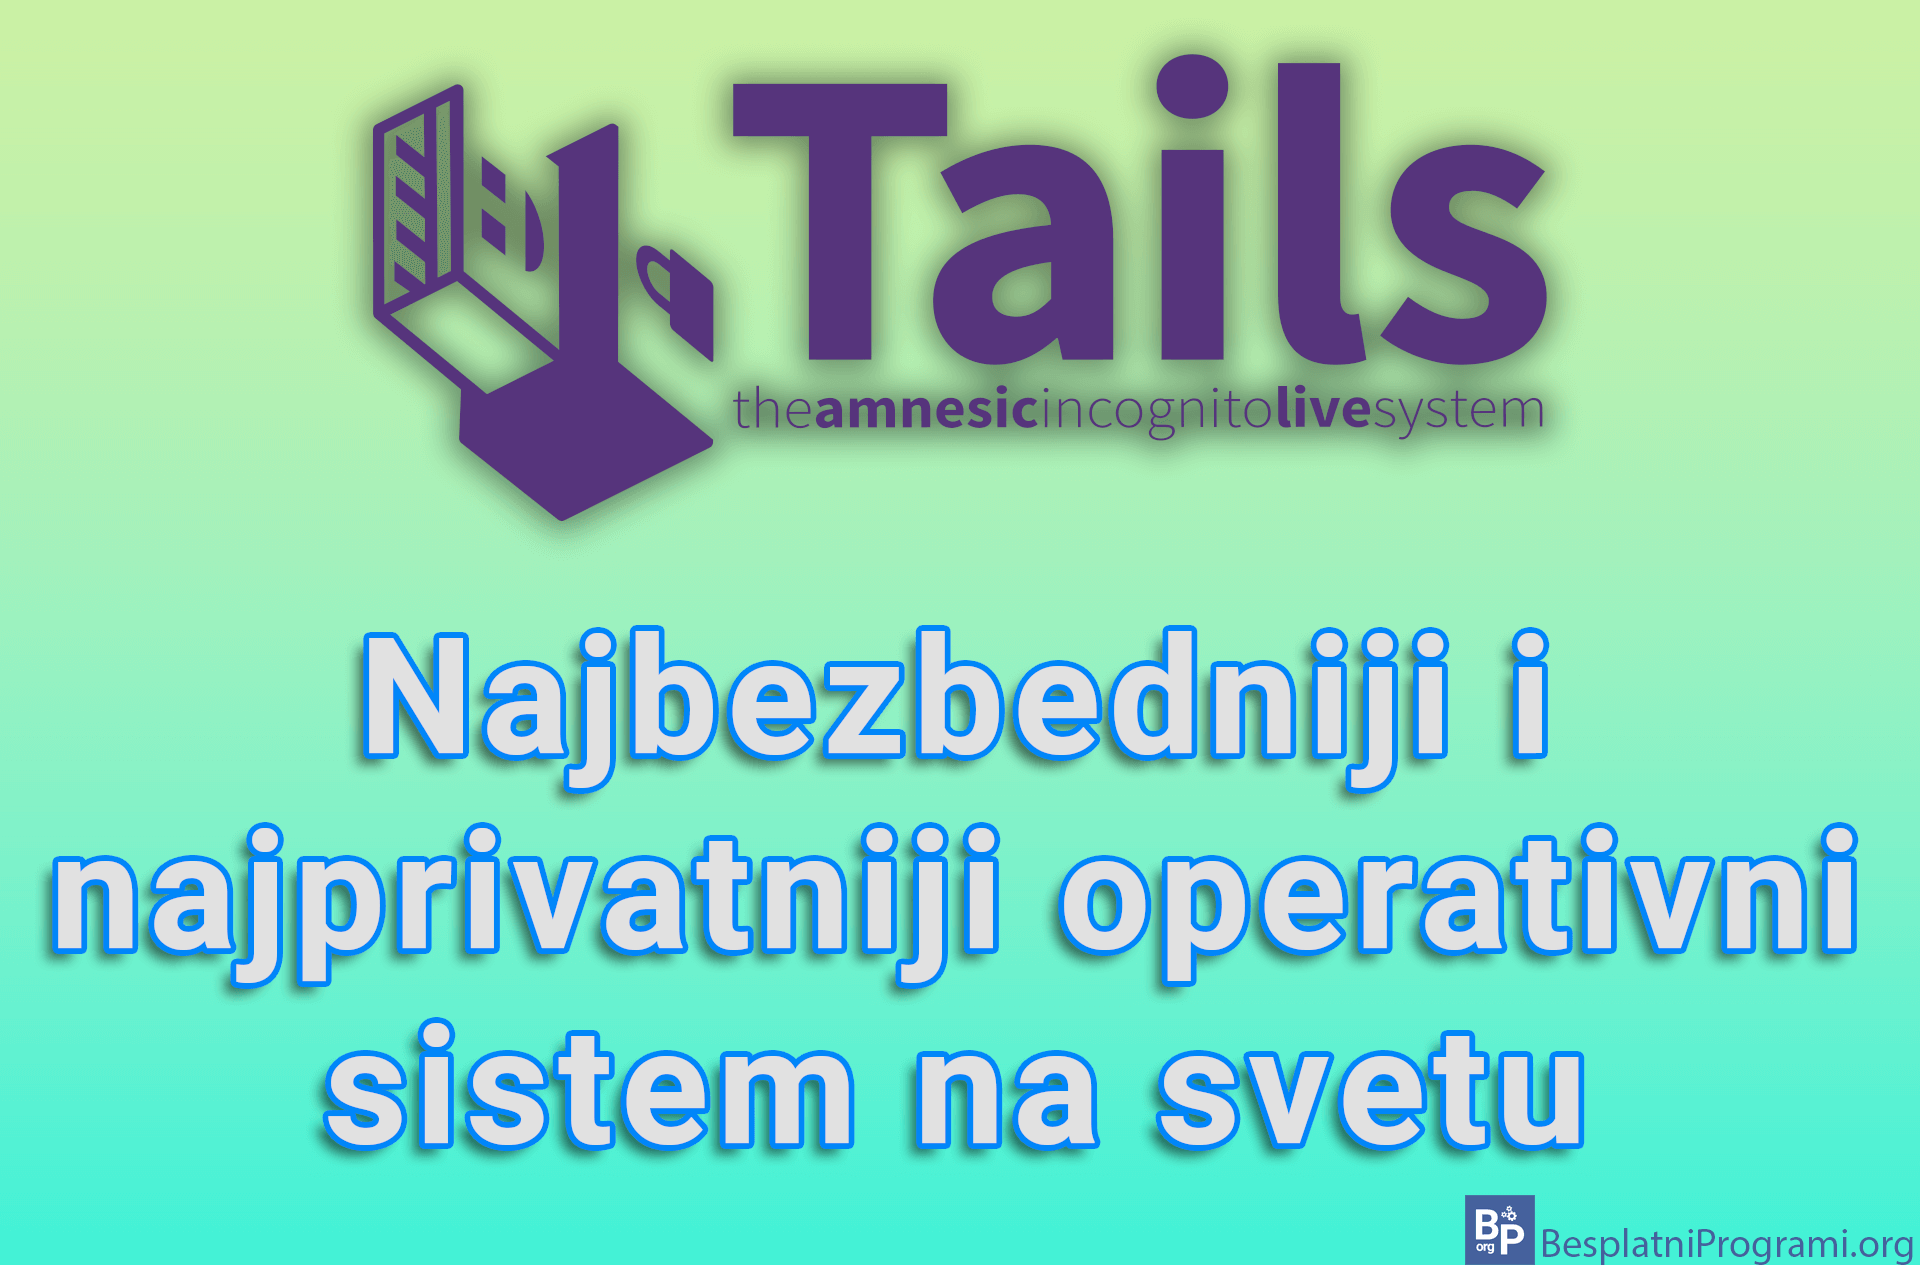 Tails - Najbezbedniji i najprivatniji operativni sistem na svetu